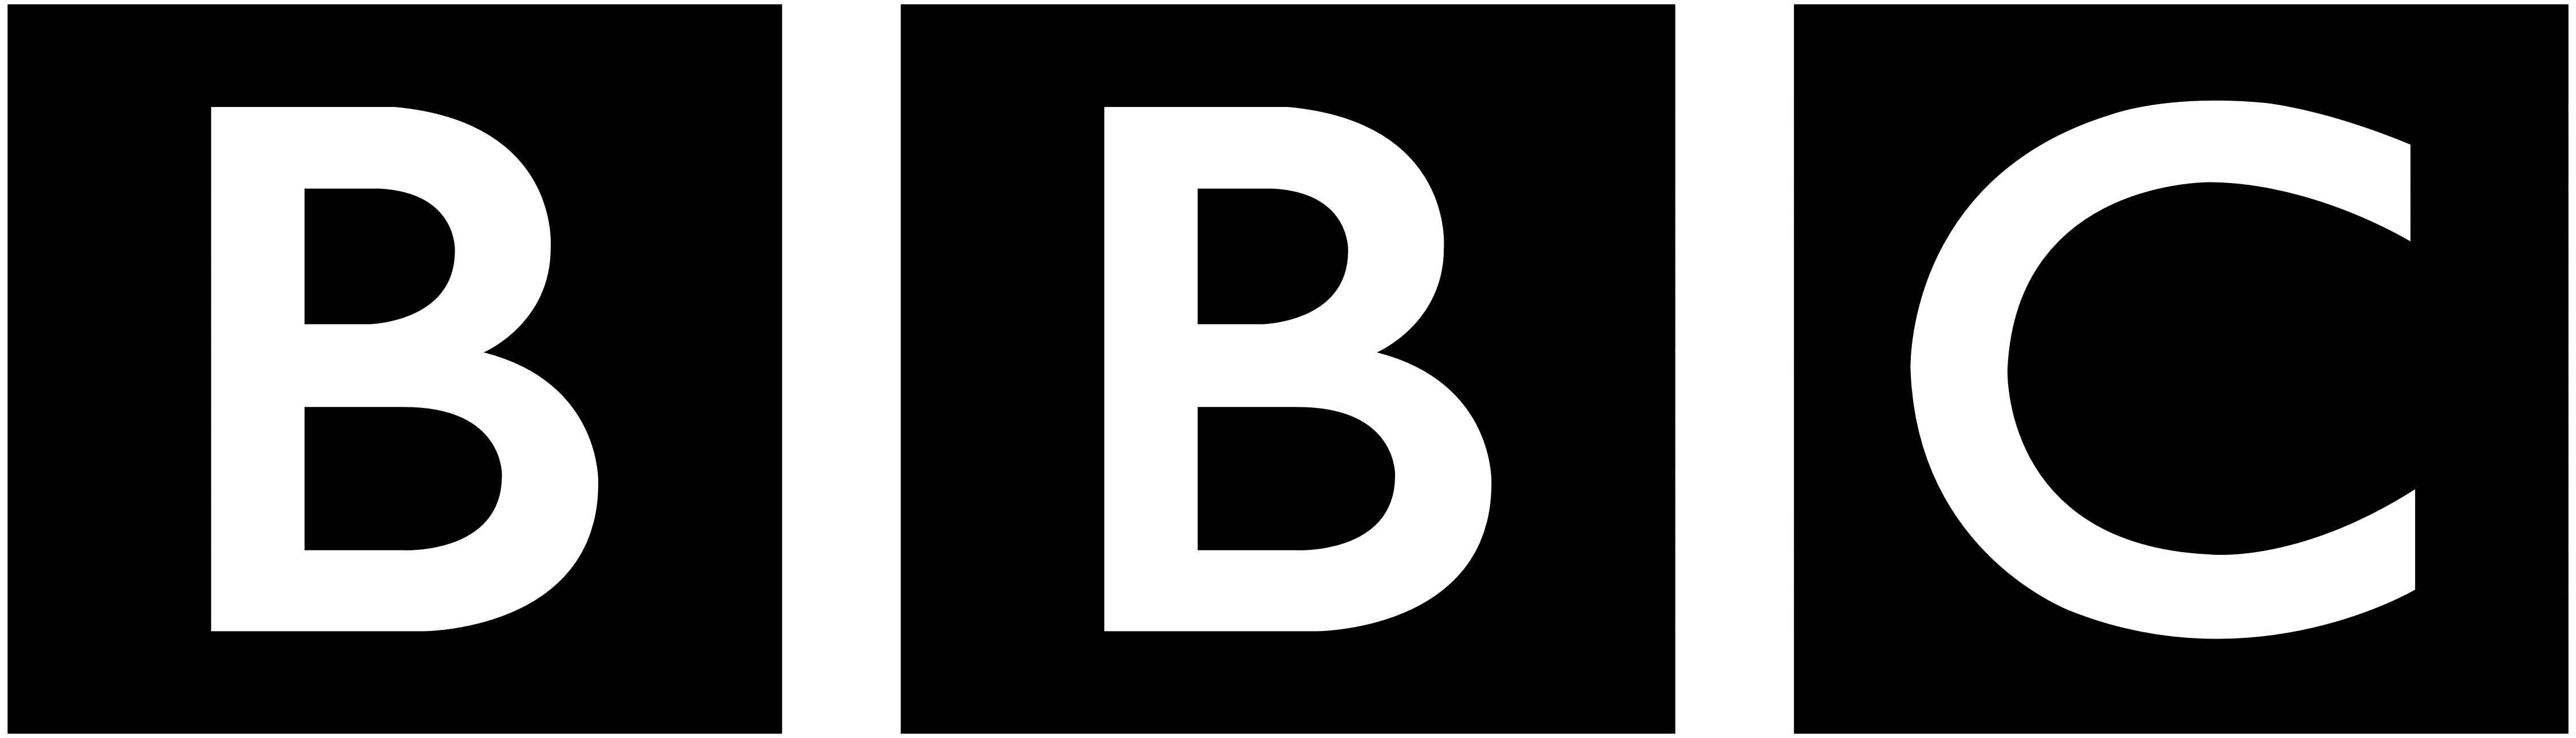 Bbc – Logos Download, Bbc Logo PNG - Free PNG